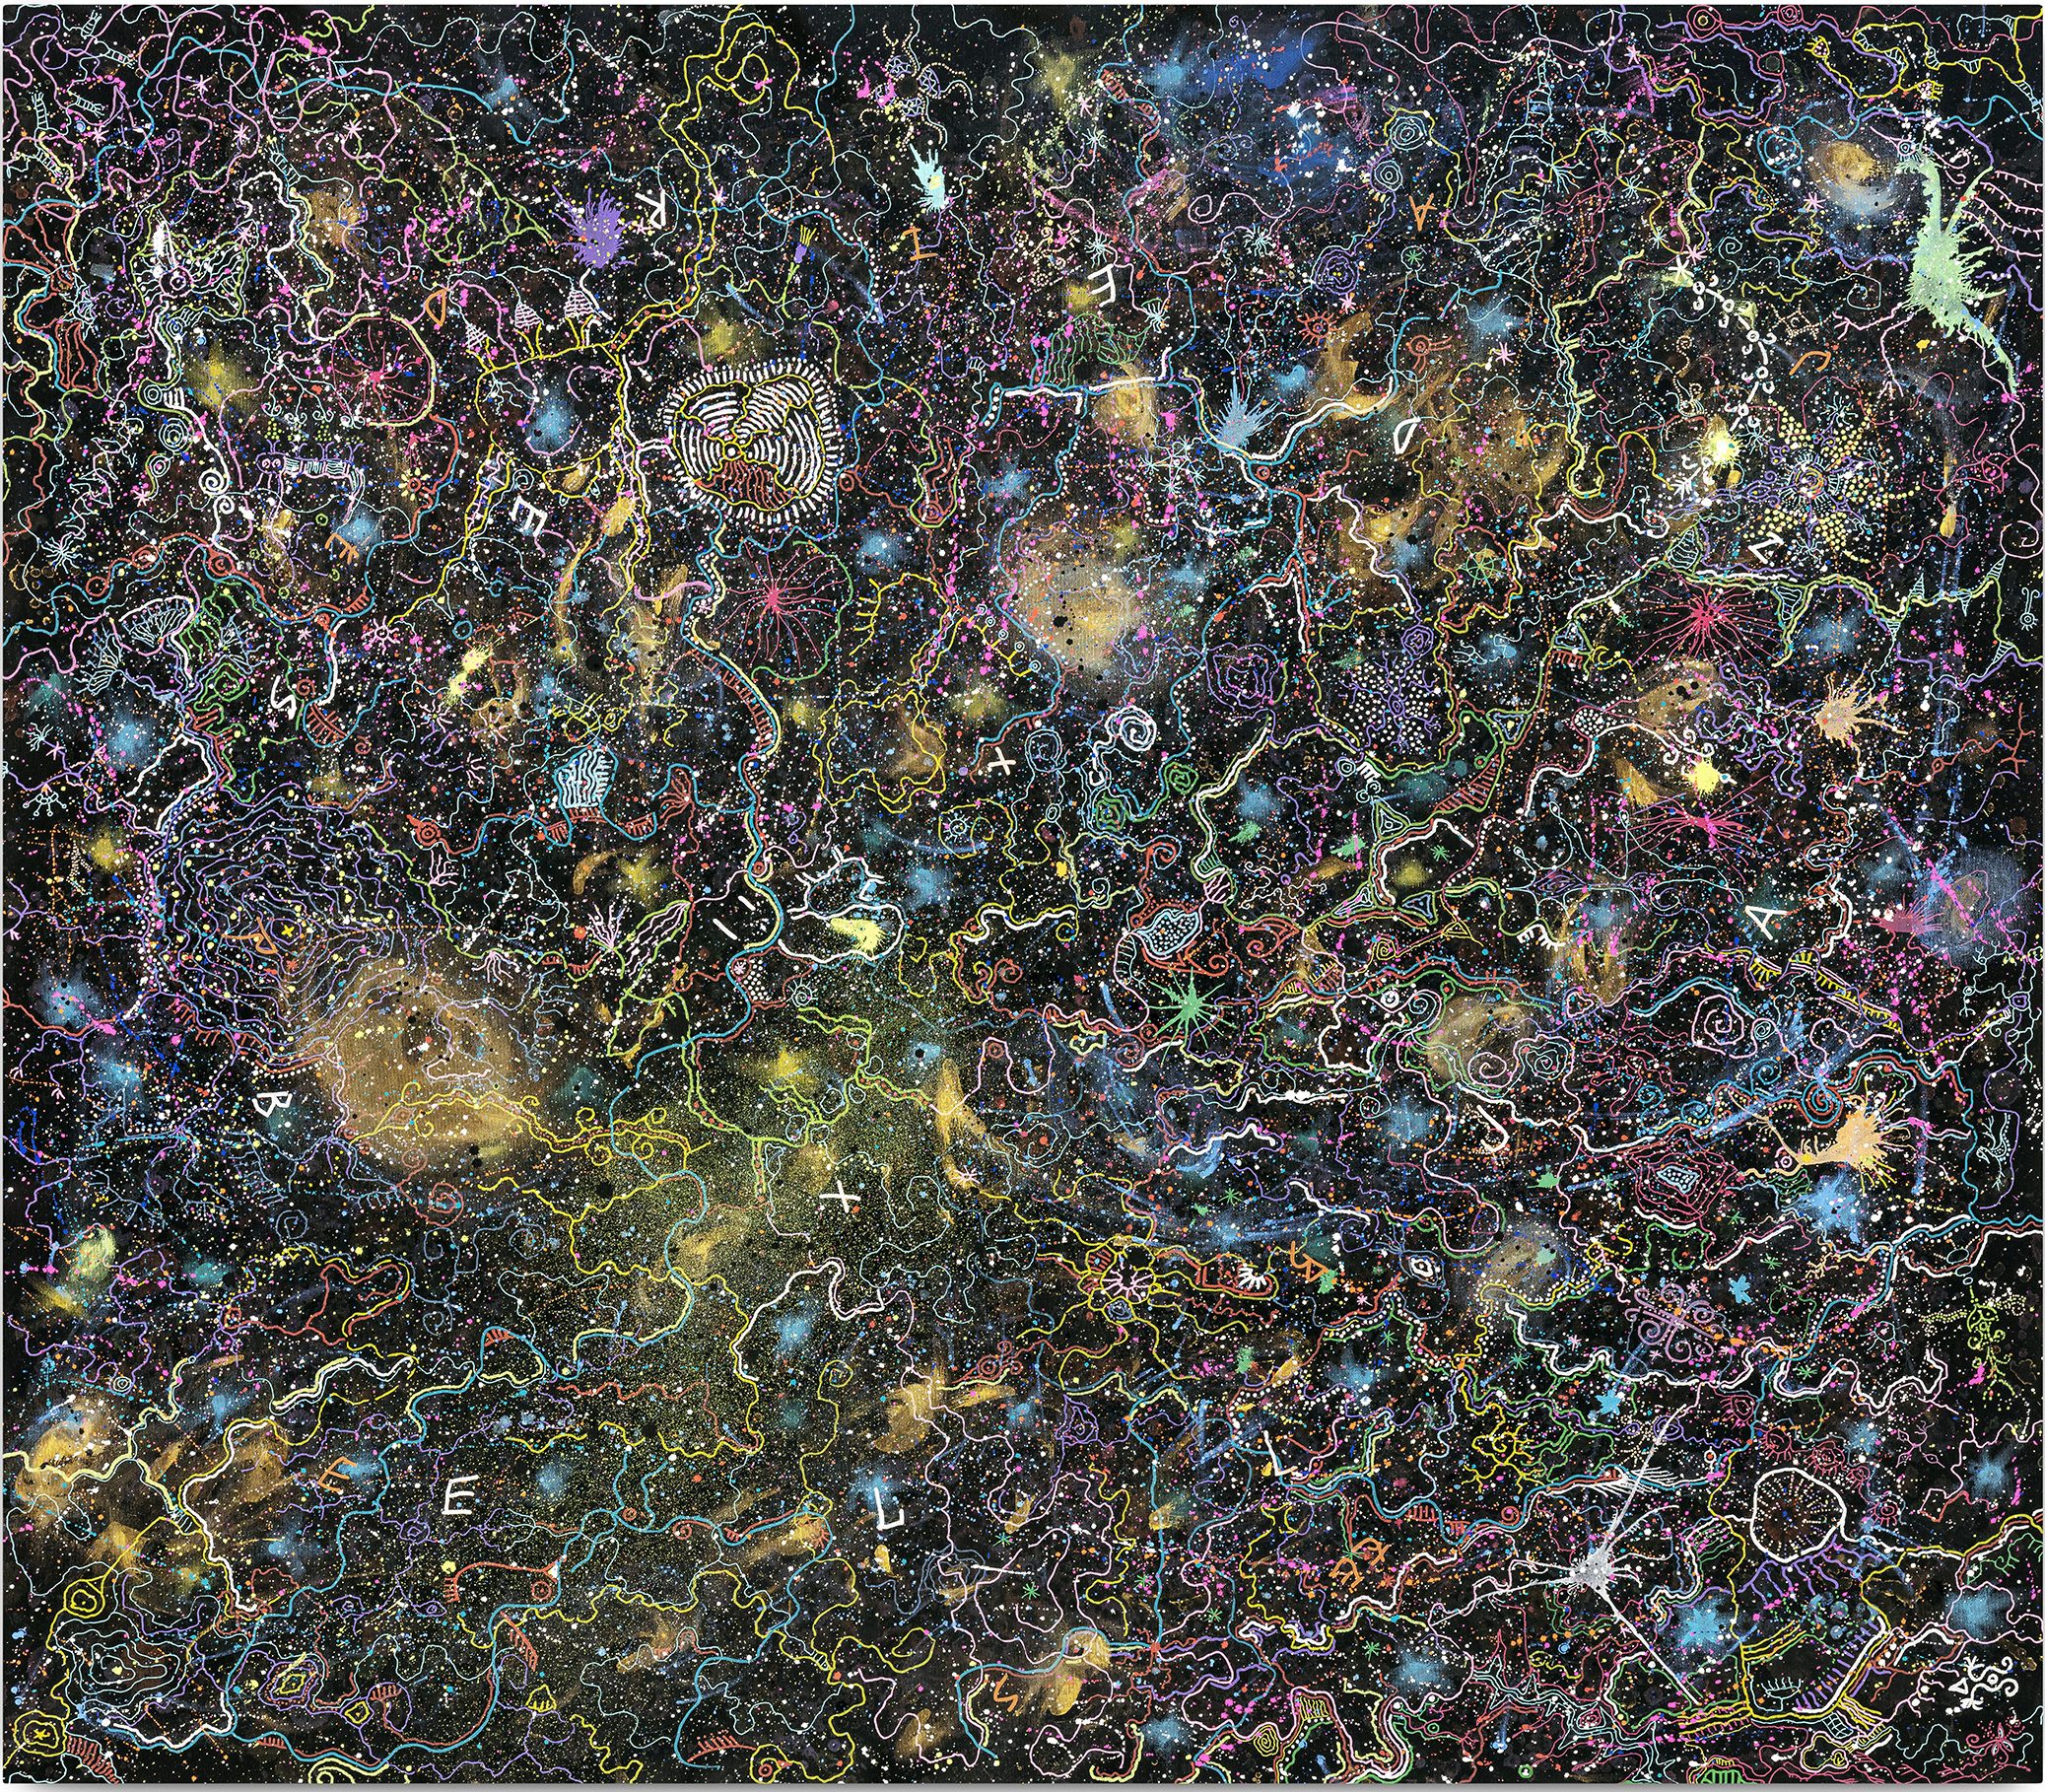 Quadro com fundo preto e milhares de desenhos em cores neon, representando a constante mutação da vida